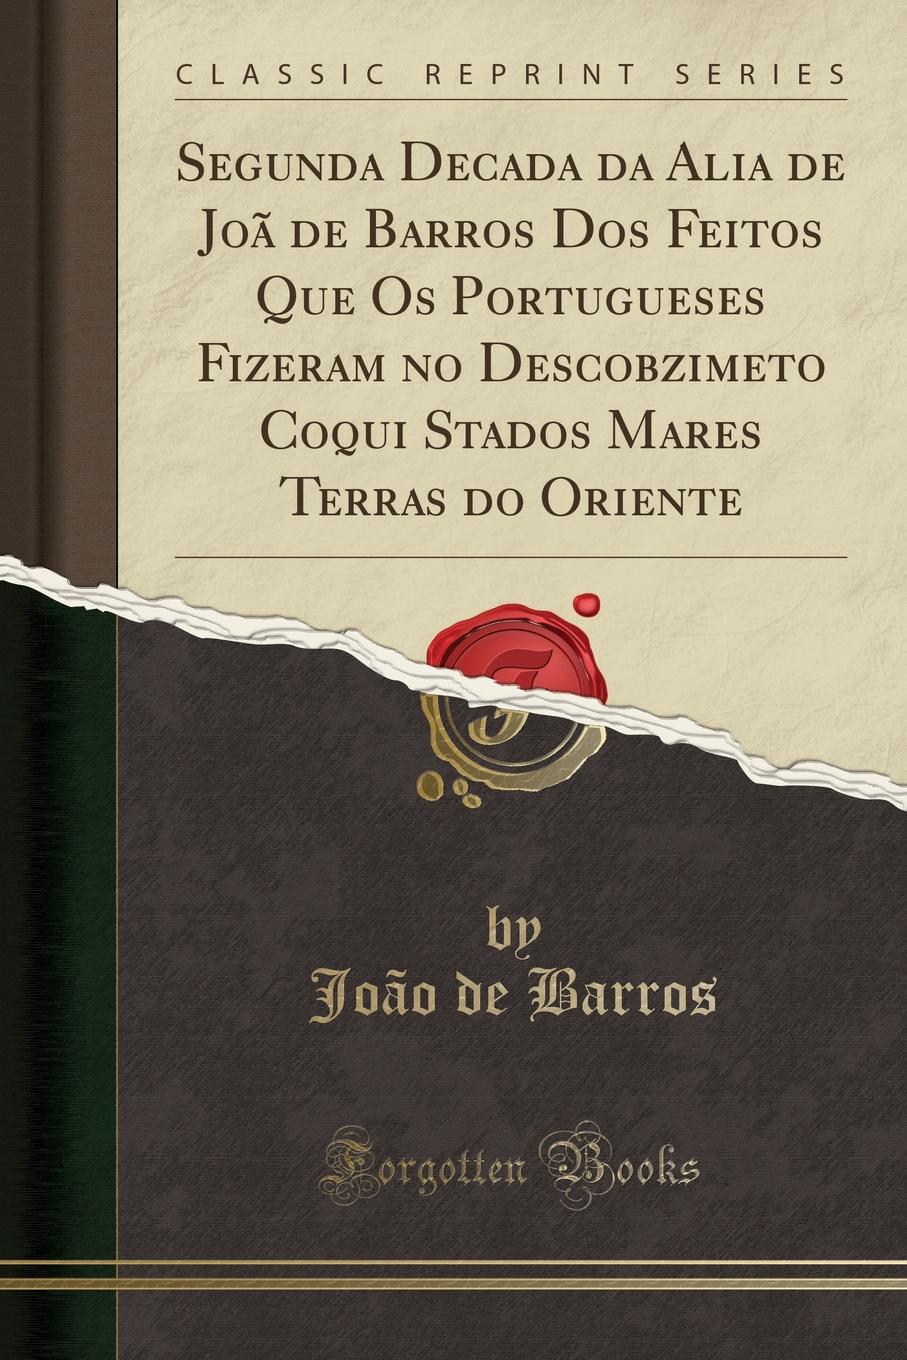 João de Barros Segunda Decada da Alia de Joa de Barros Dos Feitos Que Os Portugueses Fizeram no Descobzimeto Coqui Stados Mares Terras do Oriente (Classic Reprint)